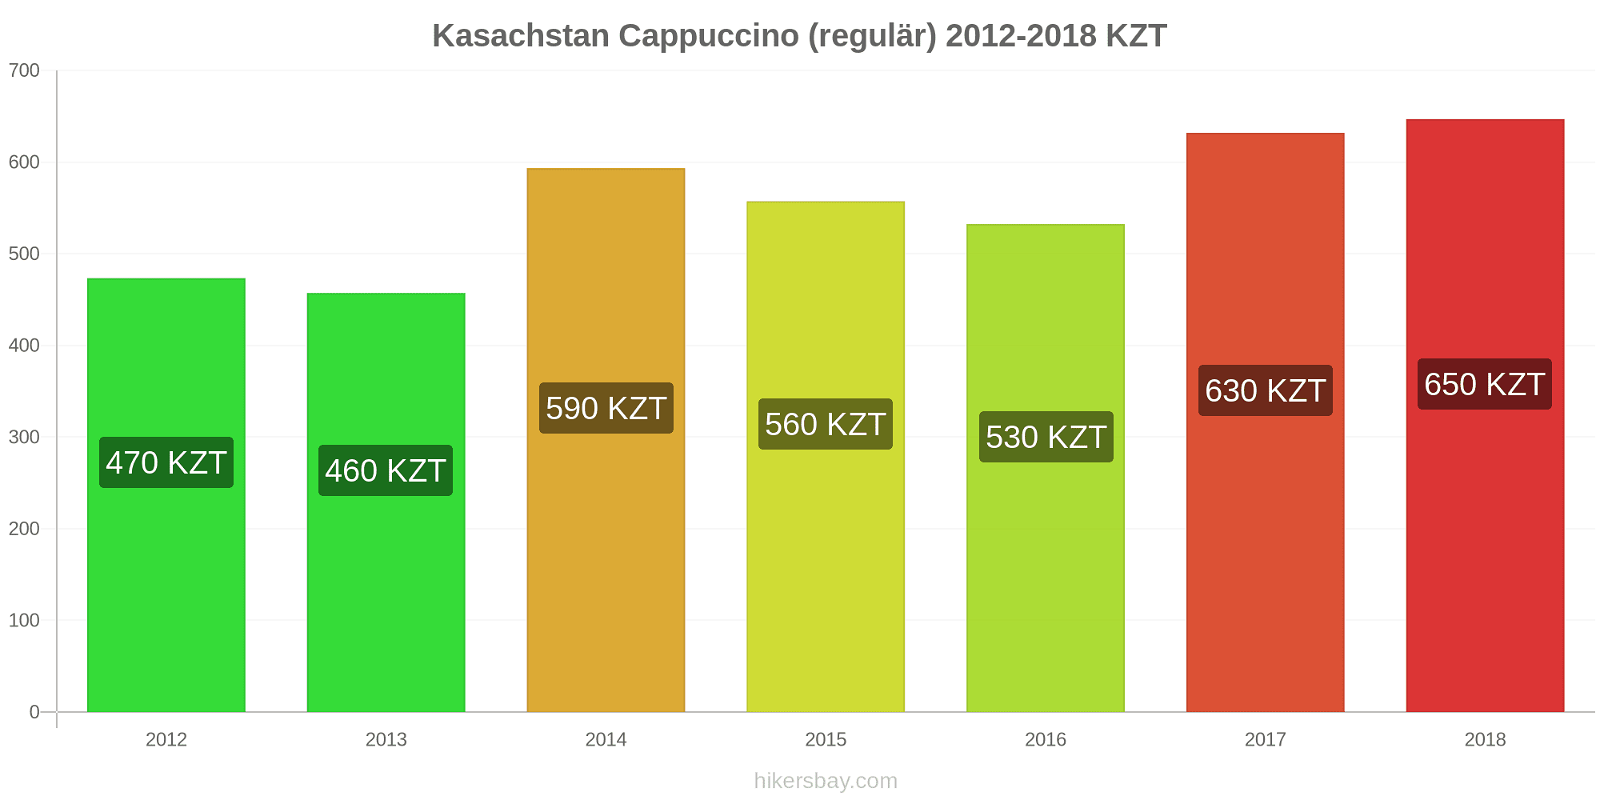 Kasachstan Preisänderungen Cappuccino hikersbay.com